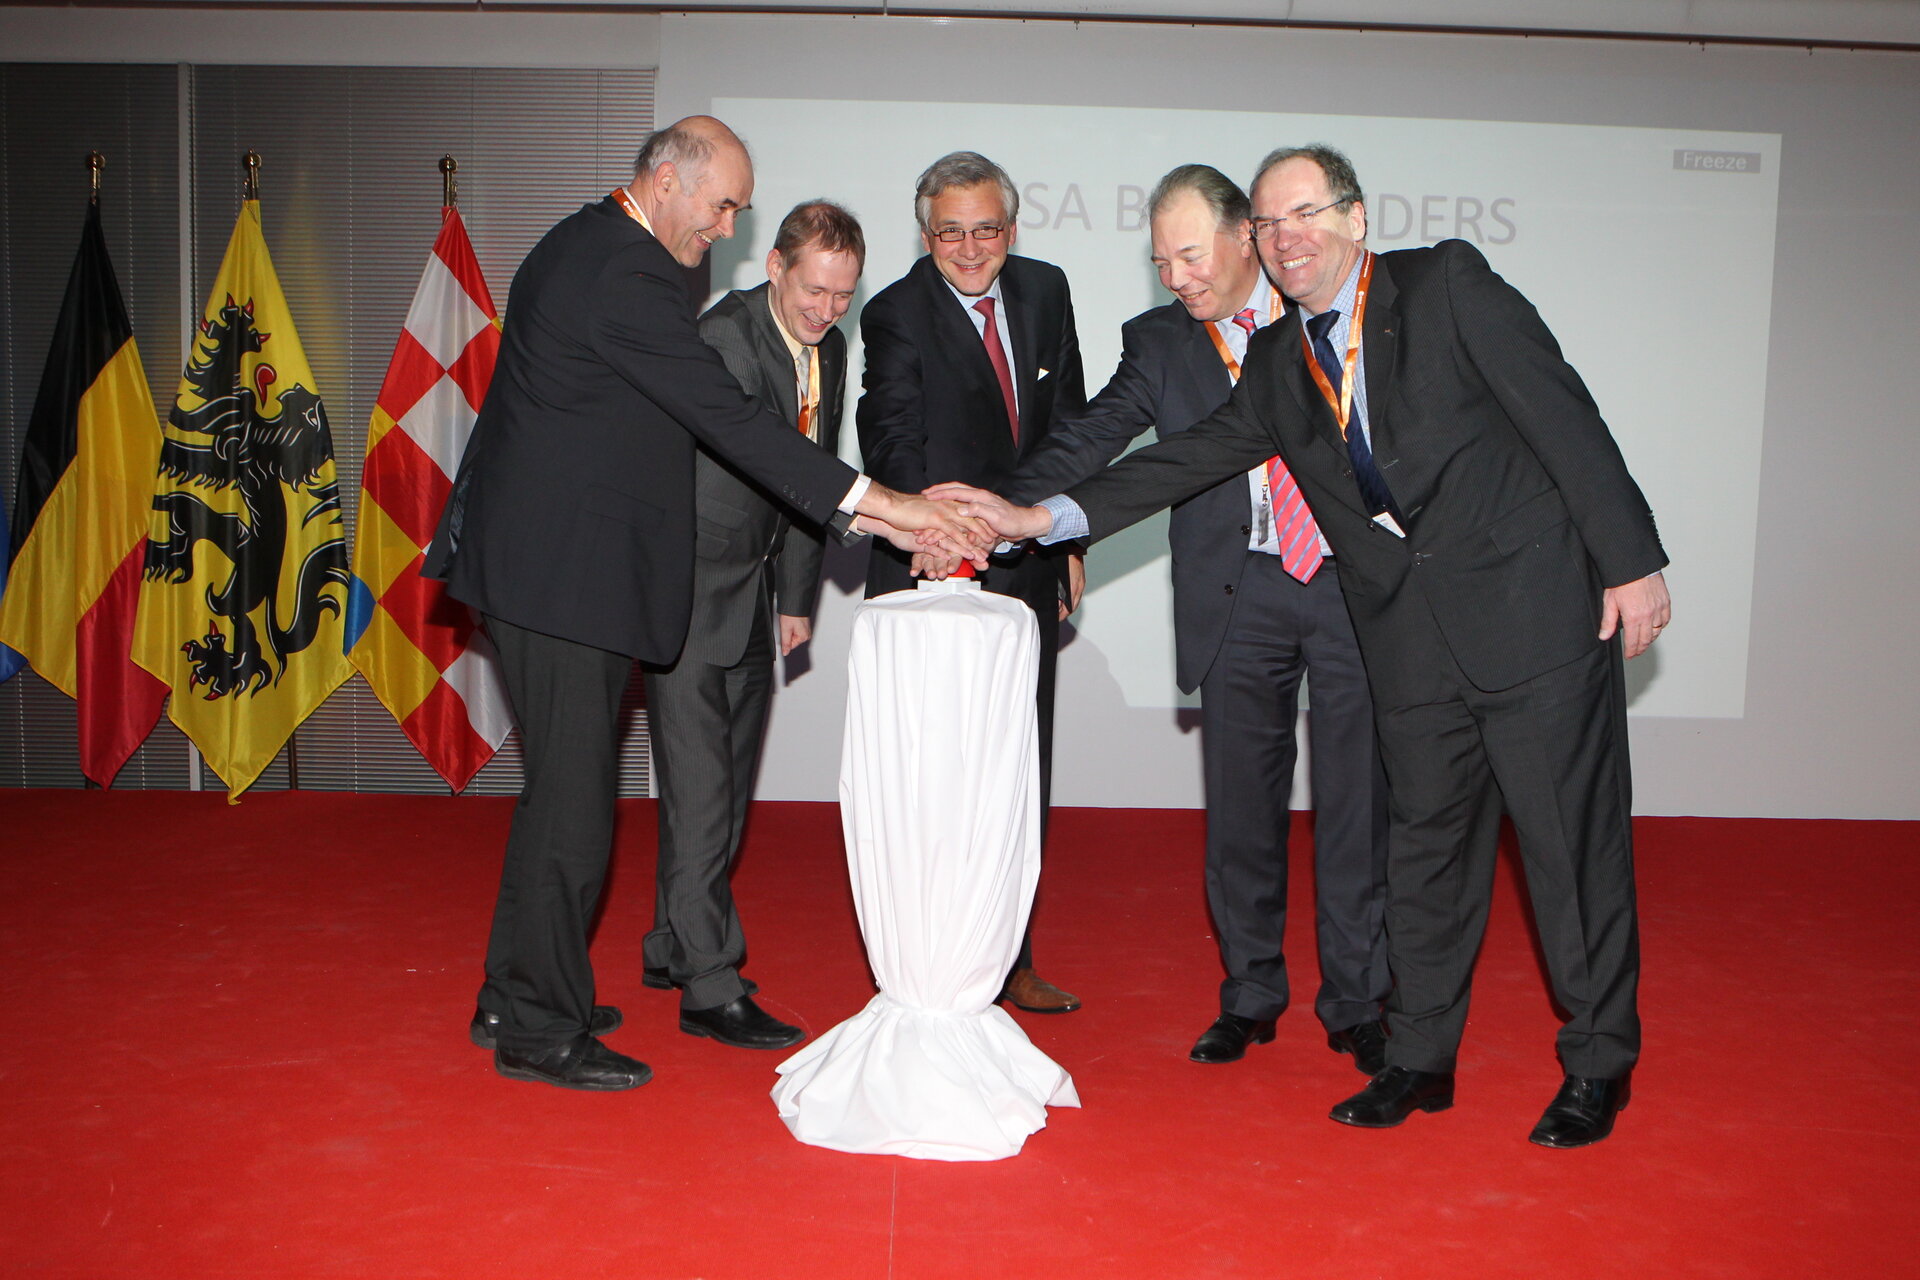 De opening van ESA BIC Flanders op 14 december 2012